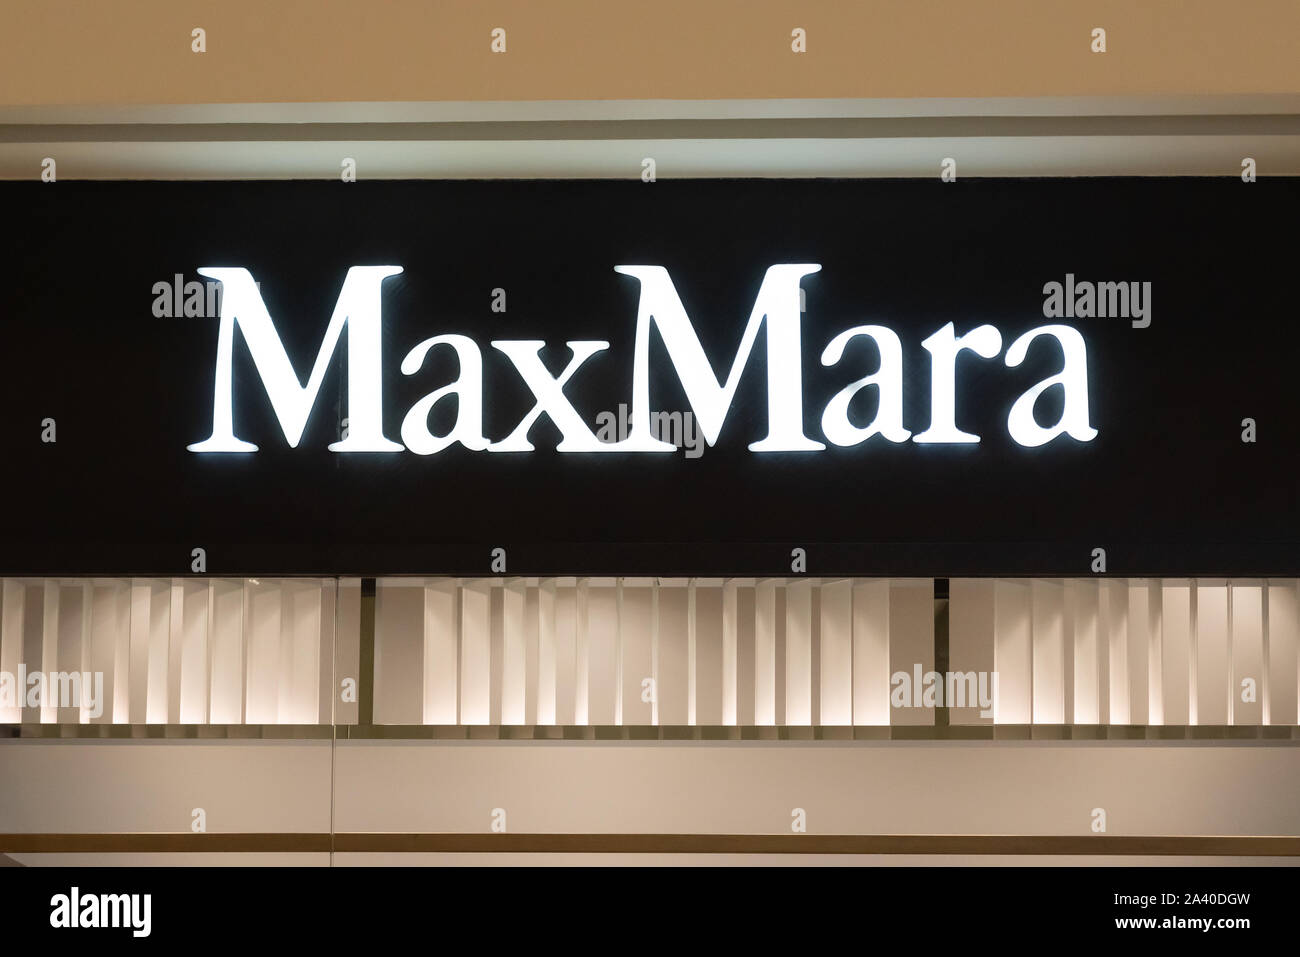 L'entreprise de mode italienne logo Max Mara vu à Shenzhen. Banque D'Images